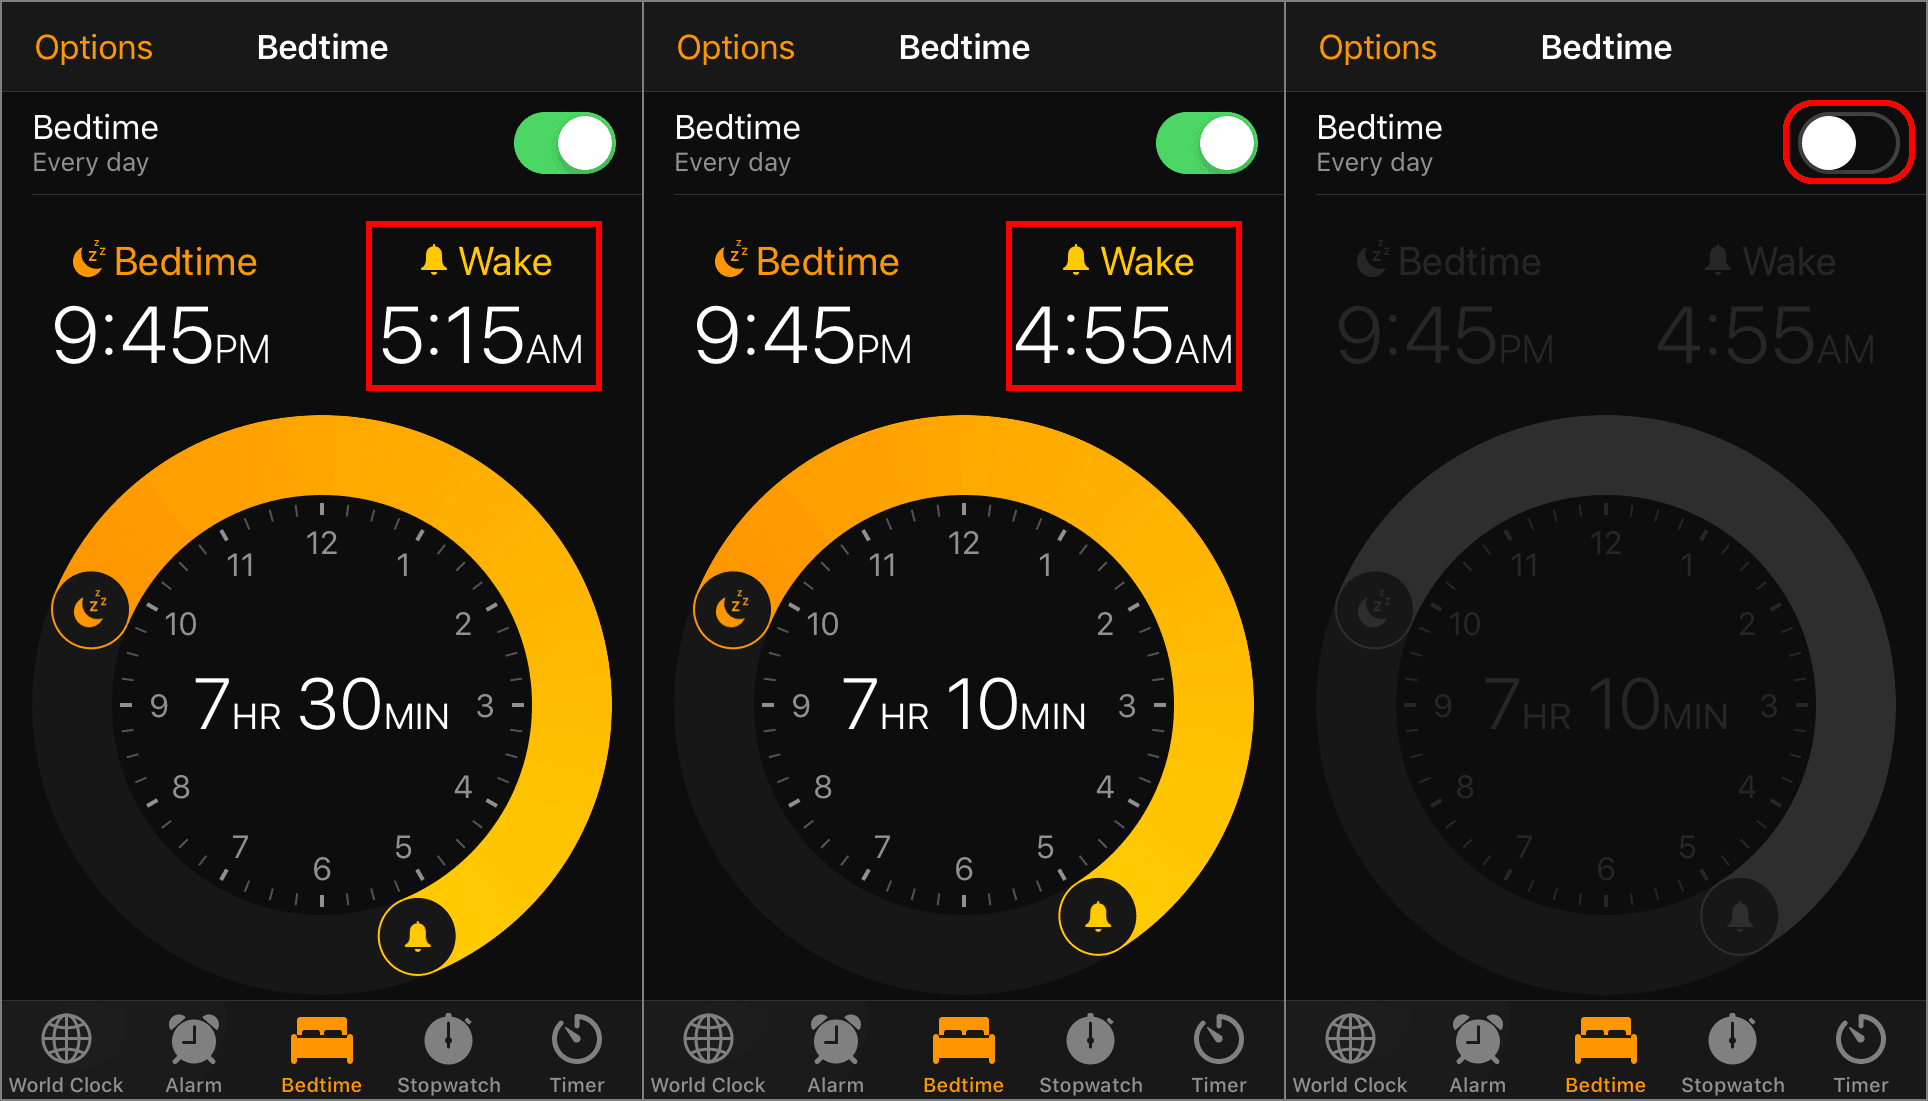 Скриншоты настроек будильника для iPhone в режиме сна